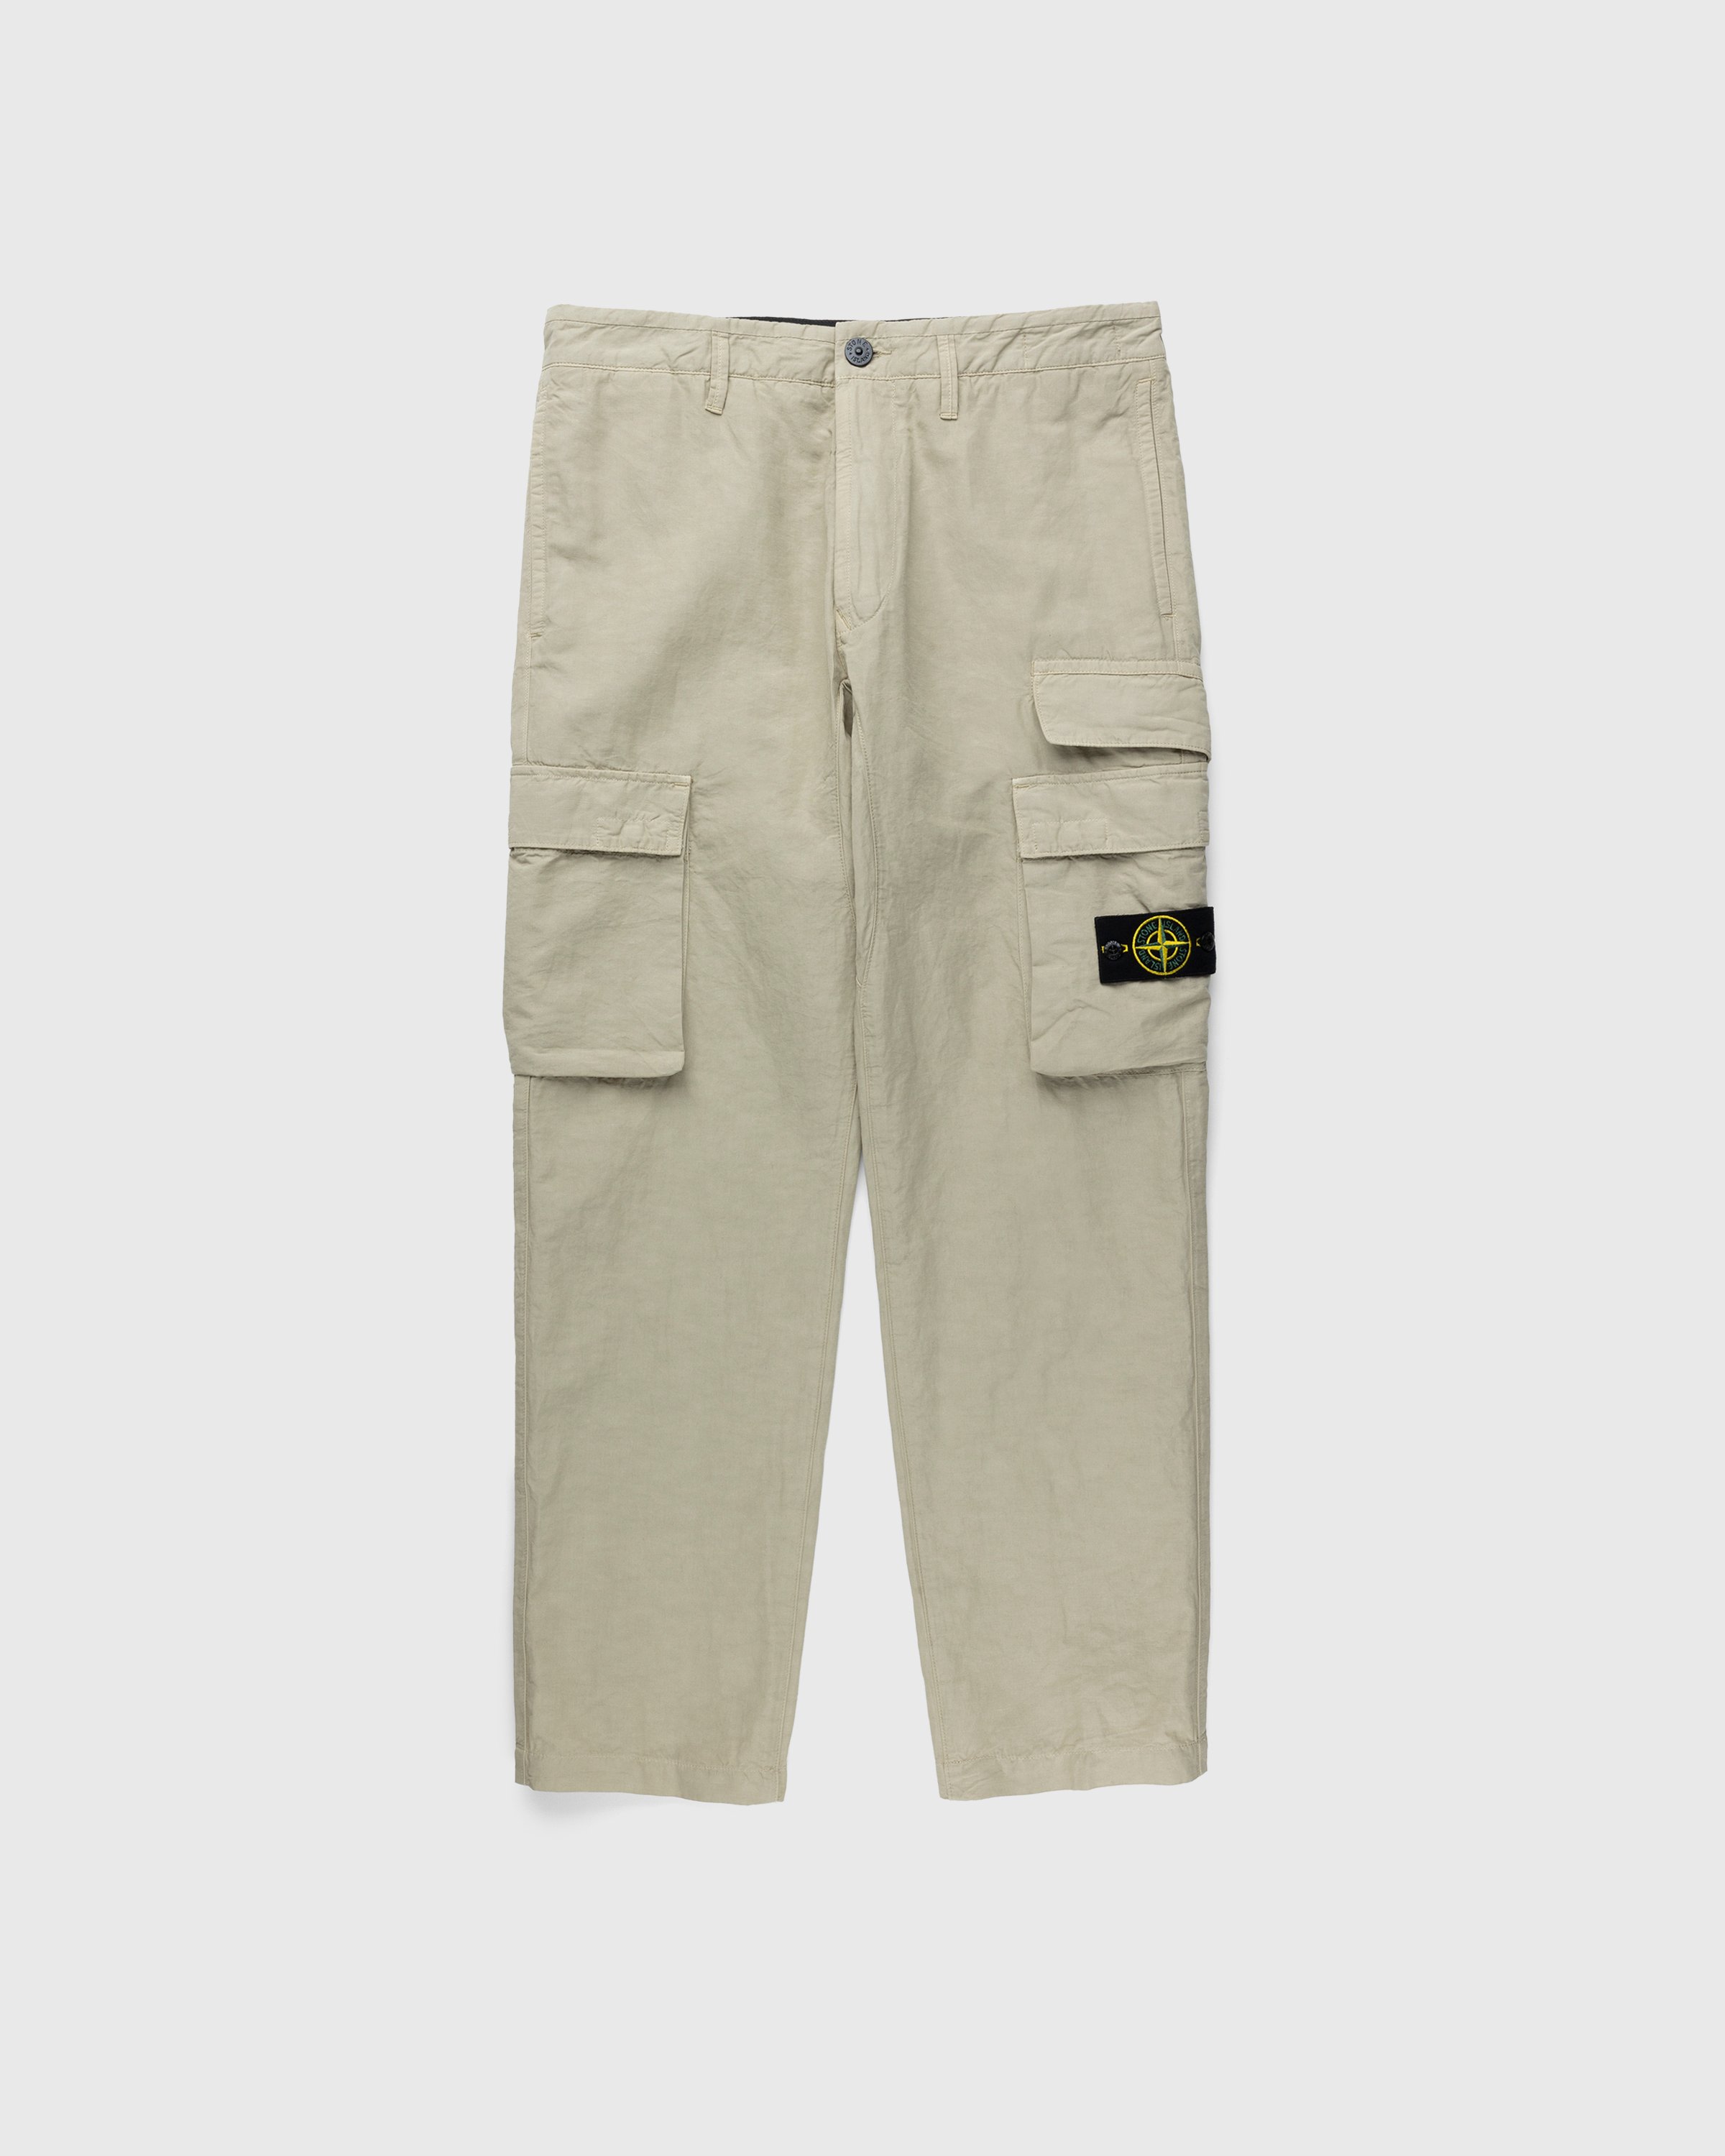 Stone Island - 31706 Garment-Dyed Cargo Pants Khaki - Clothing - Beige - Image 1